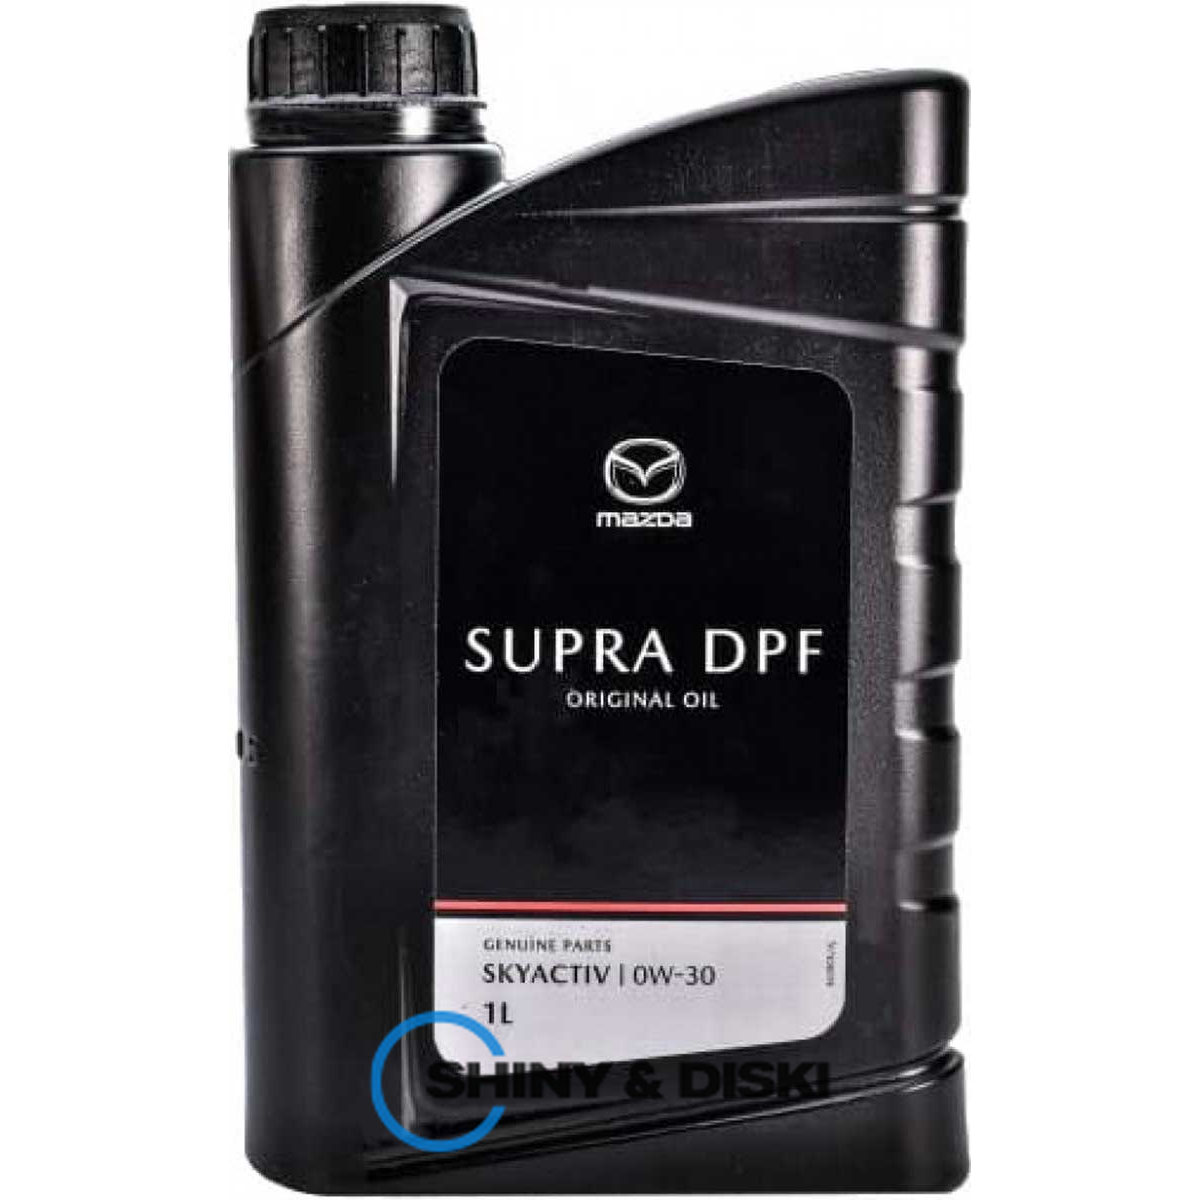 mazda original oil supra dpf 0w-30 (1л)